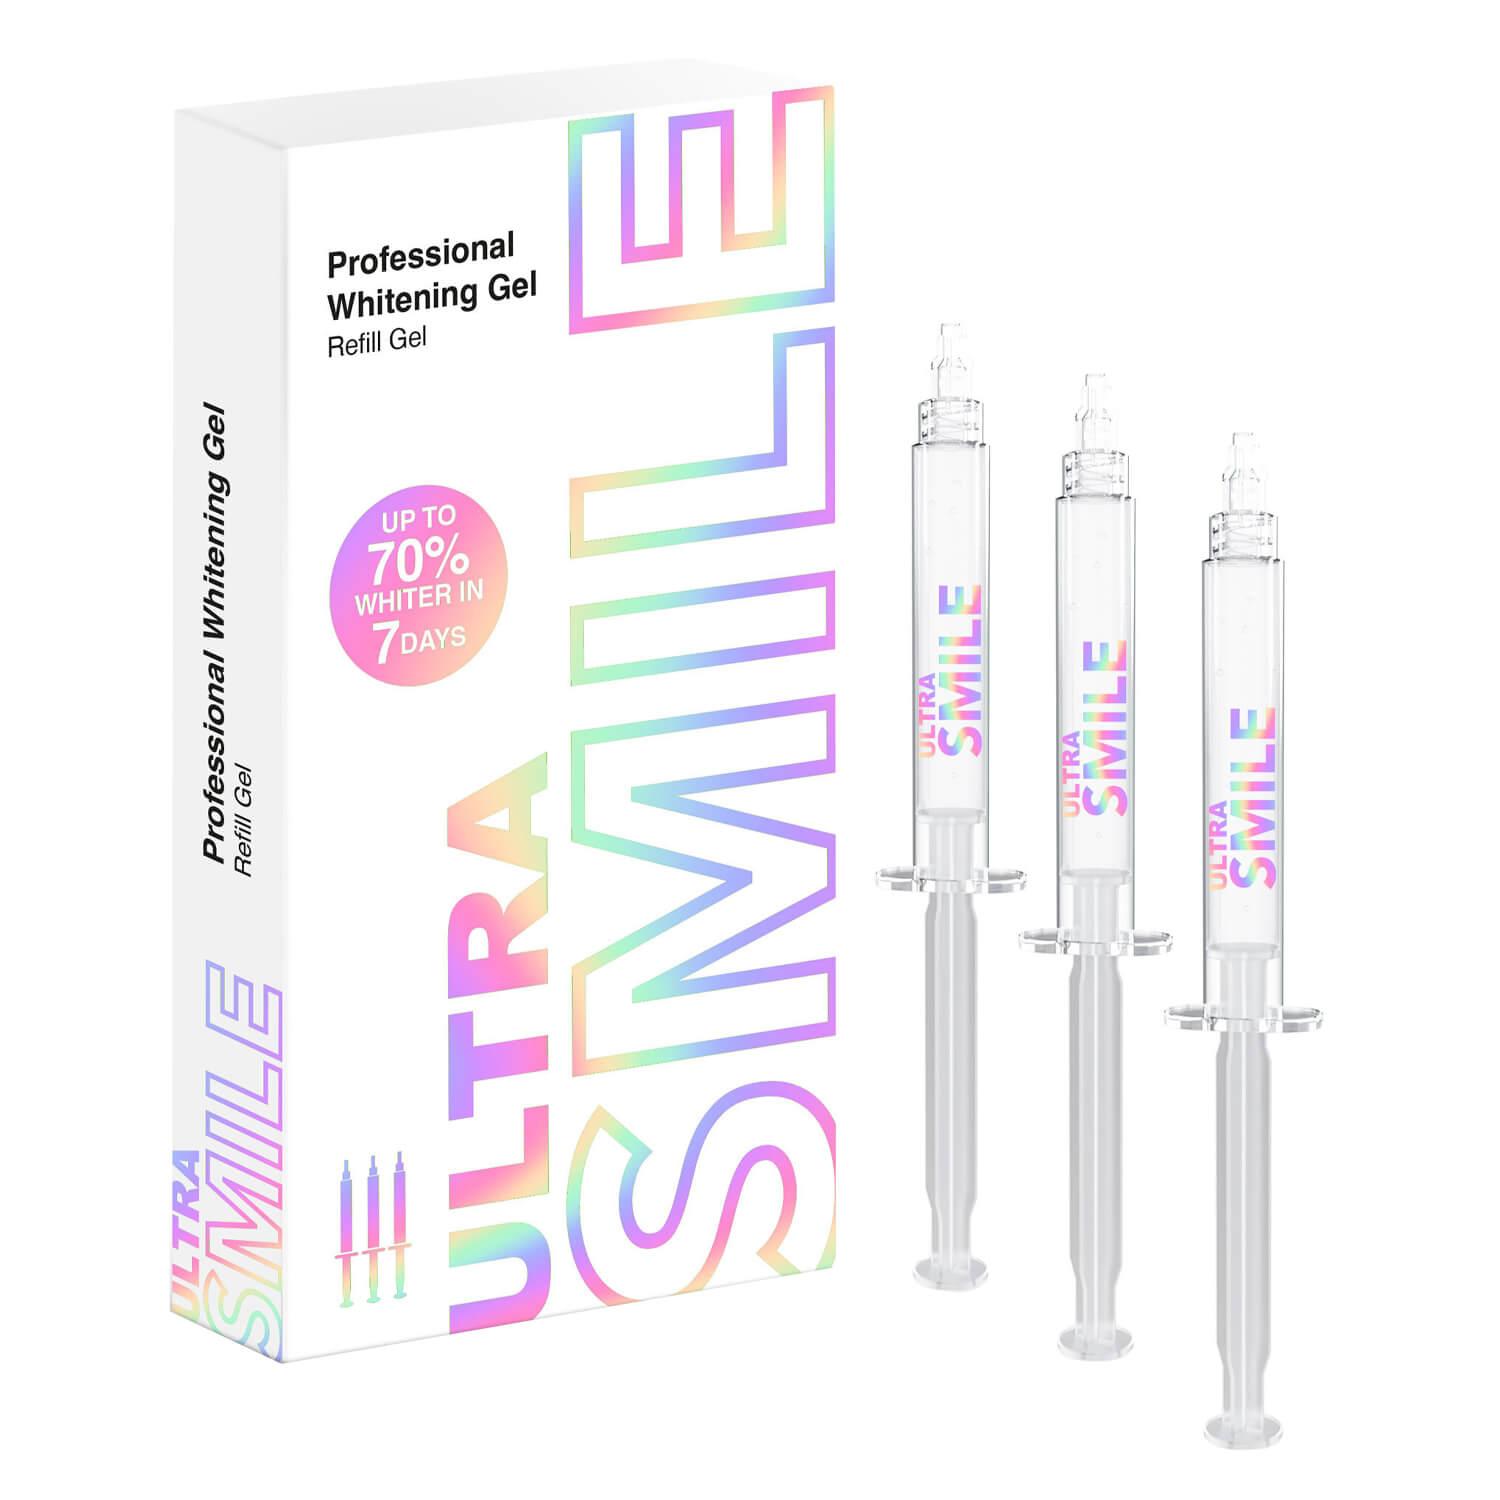 UltraSmile - Professional Whitening Gel Refill Kit